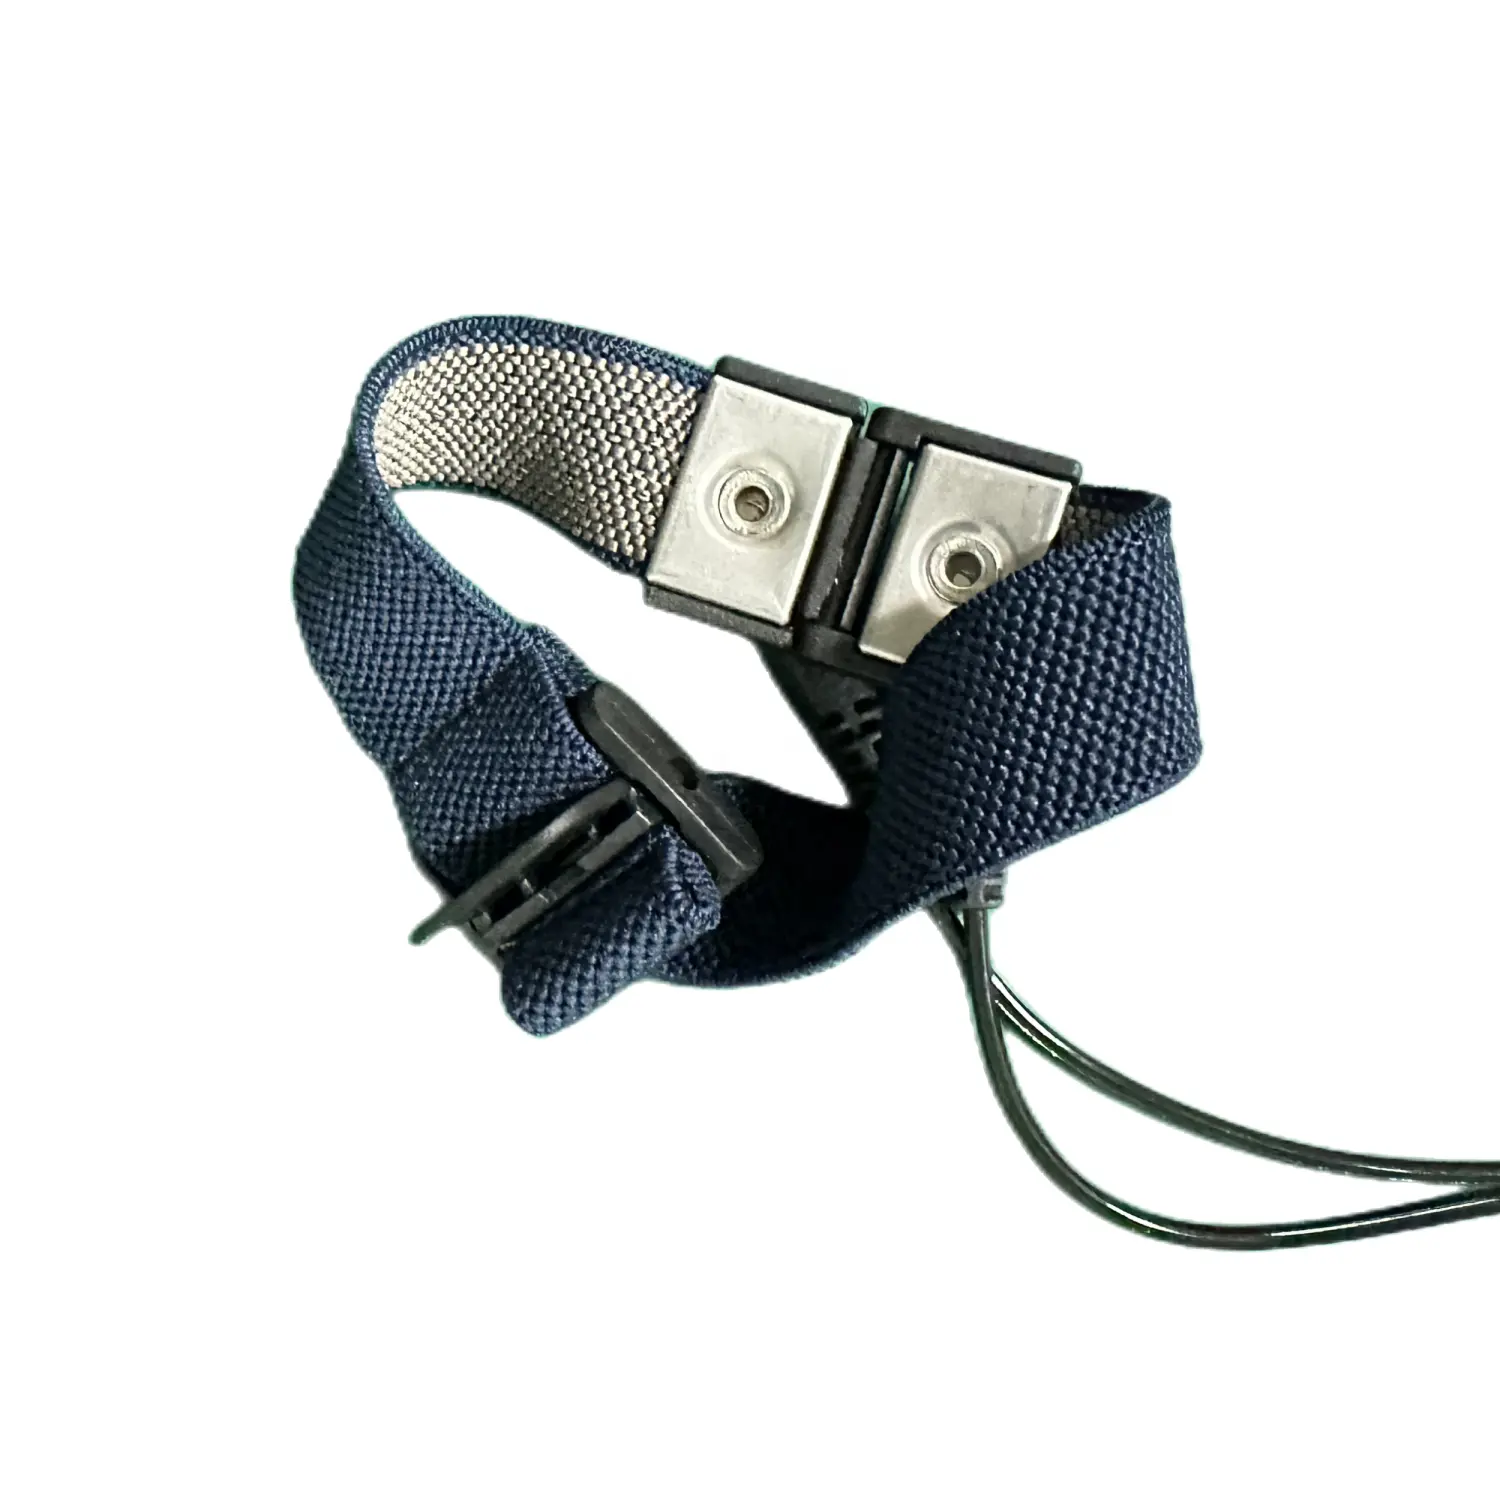 Tipo portatile di fabbrica controllo statico utilizzo cinturino in tessuto conduttivo cinturino da polso antistatico per scarico elettrostatico in camera bianca